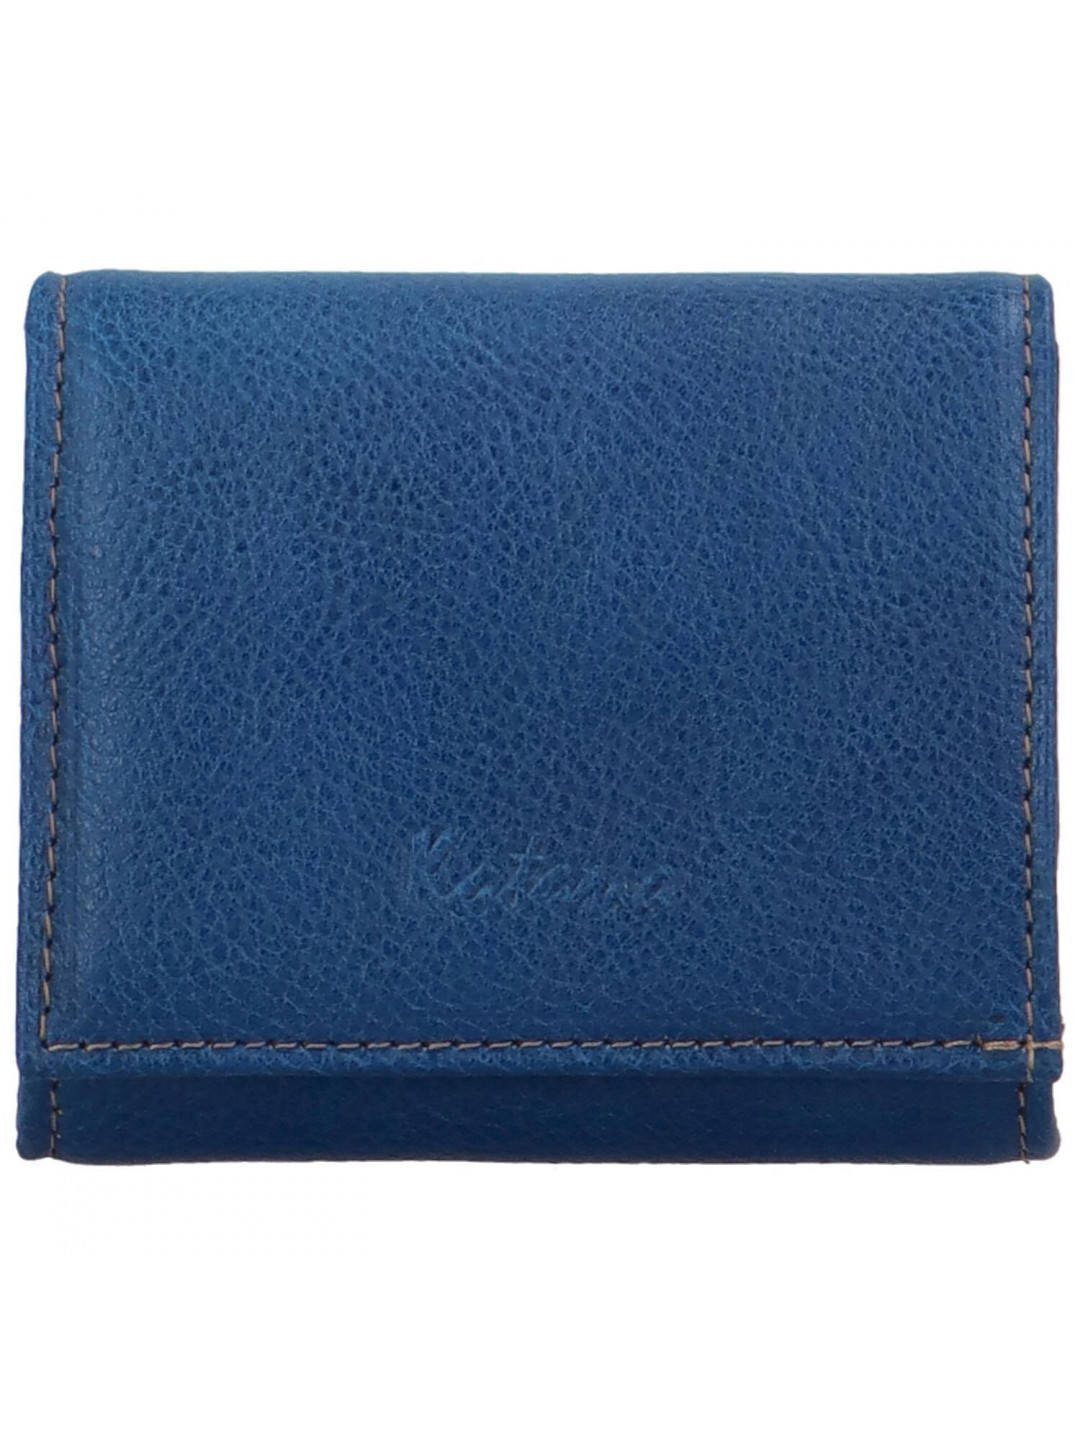 Dámská kožená peněženka modrá – Katana Triwia